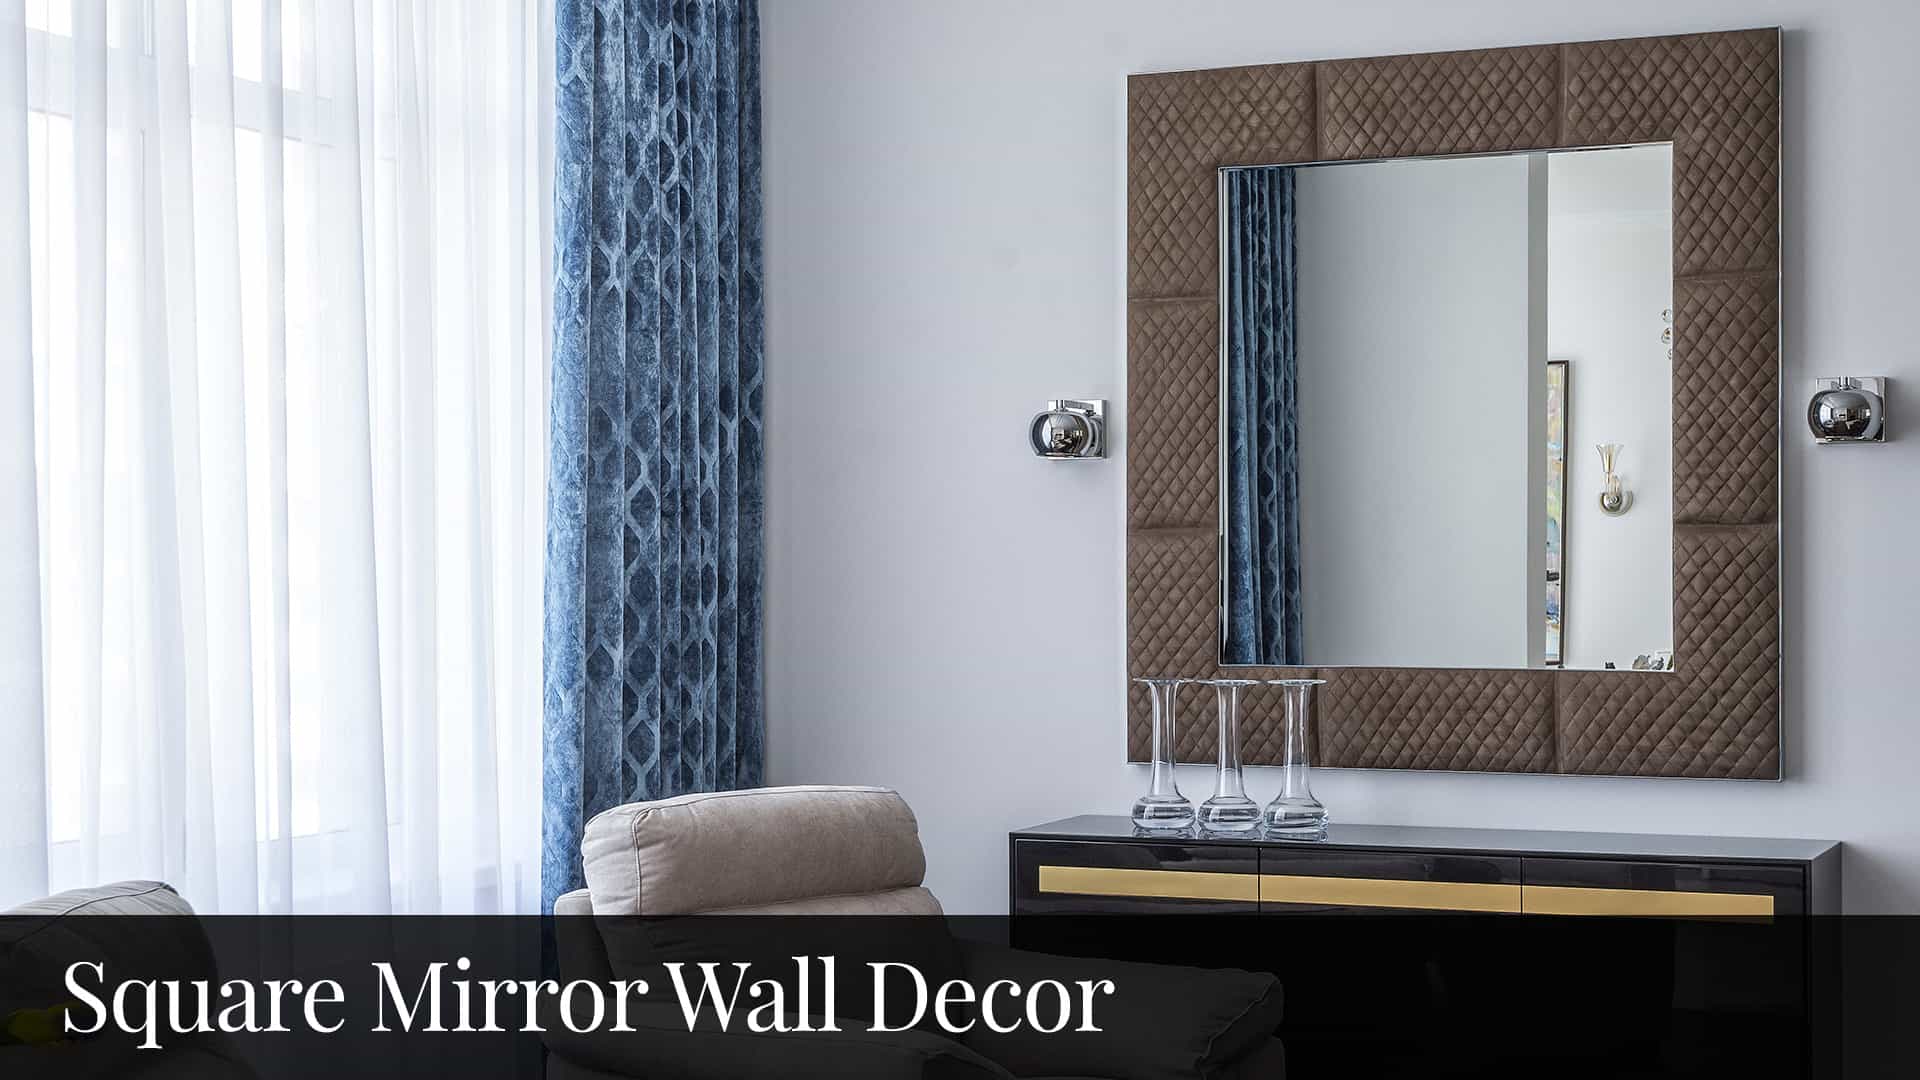 Square Mirror Wall Decor Bluebombay.com